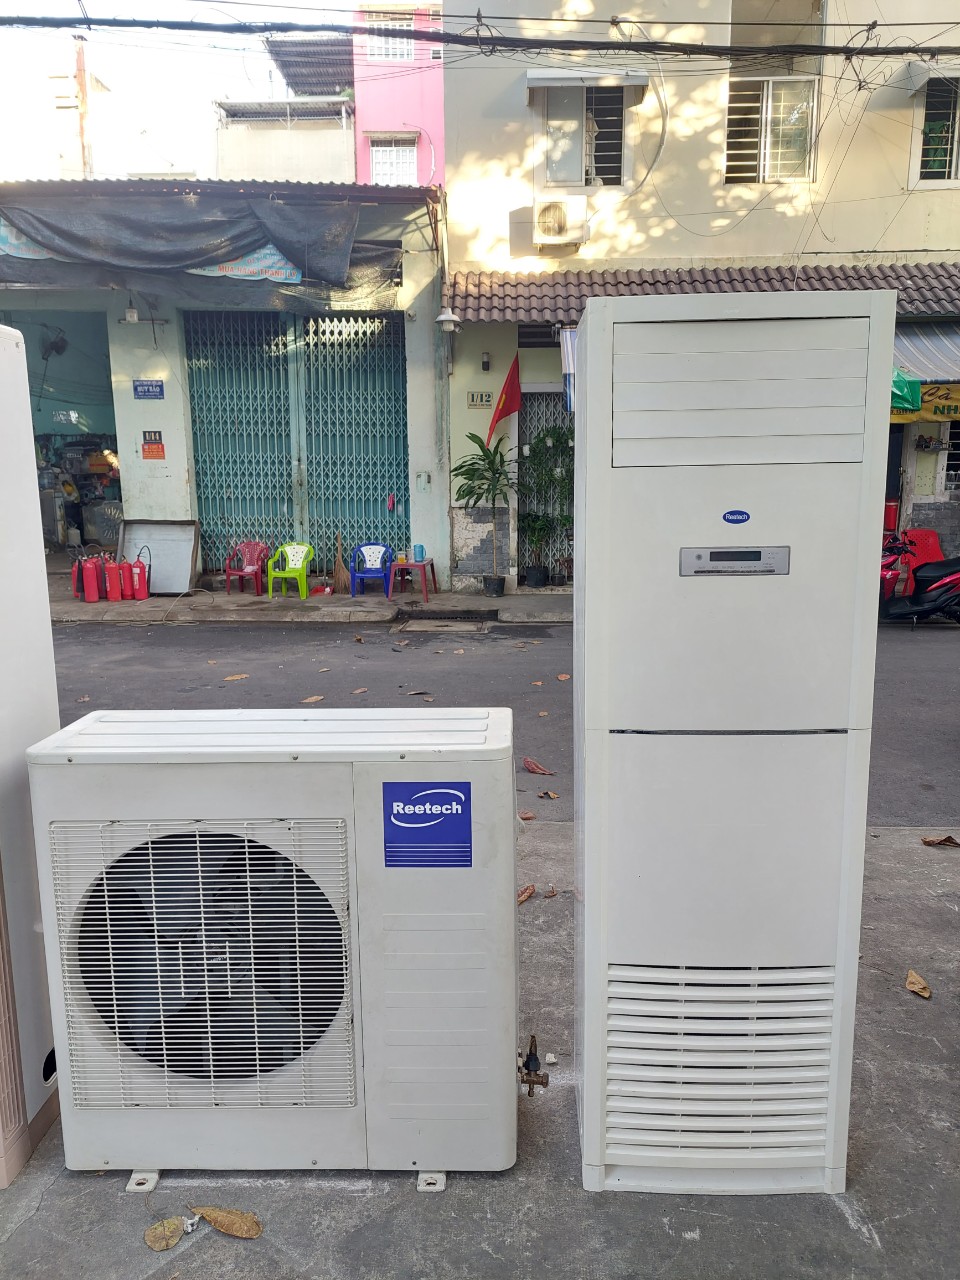 Thanh lý máy lạnh cũ qua sử dụng tphcm 0907 243 680 chuyên mua bán trao đổi máy lạnh cũ và mới uy tín ,15 năm kinh nghiệm làm điện lạnh tại TPHCM.